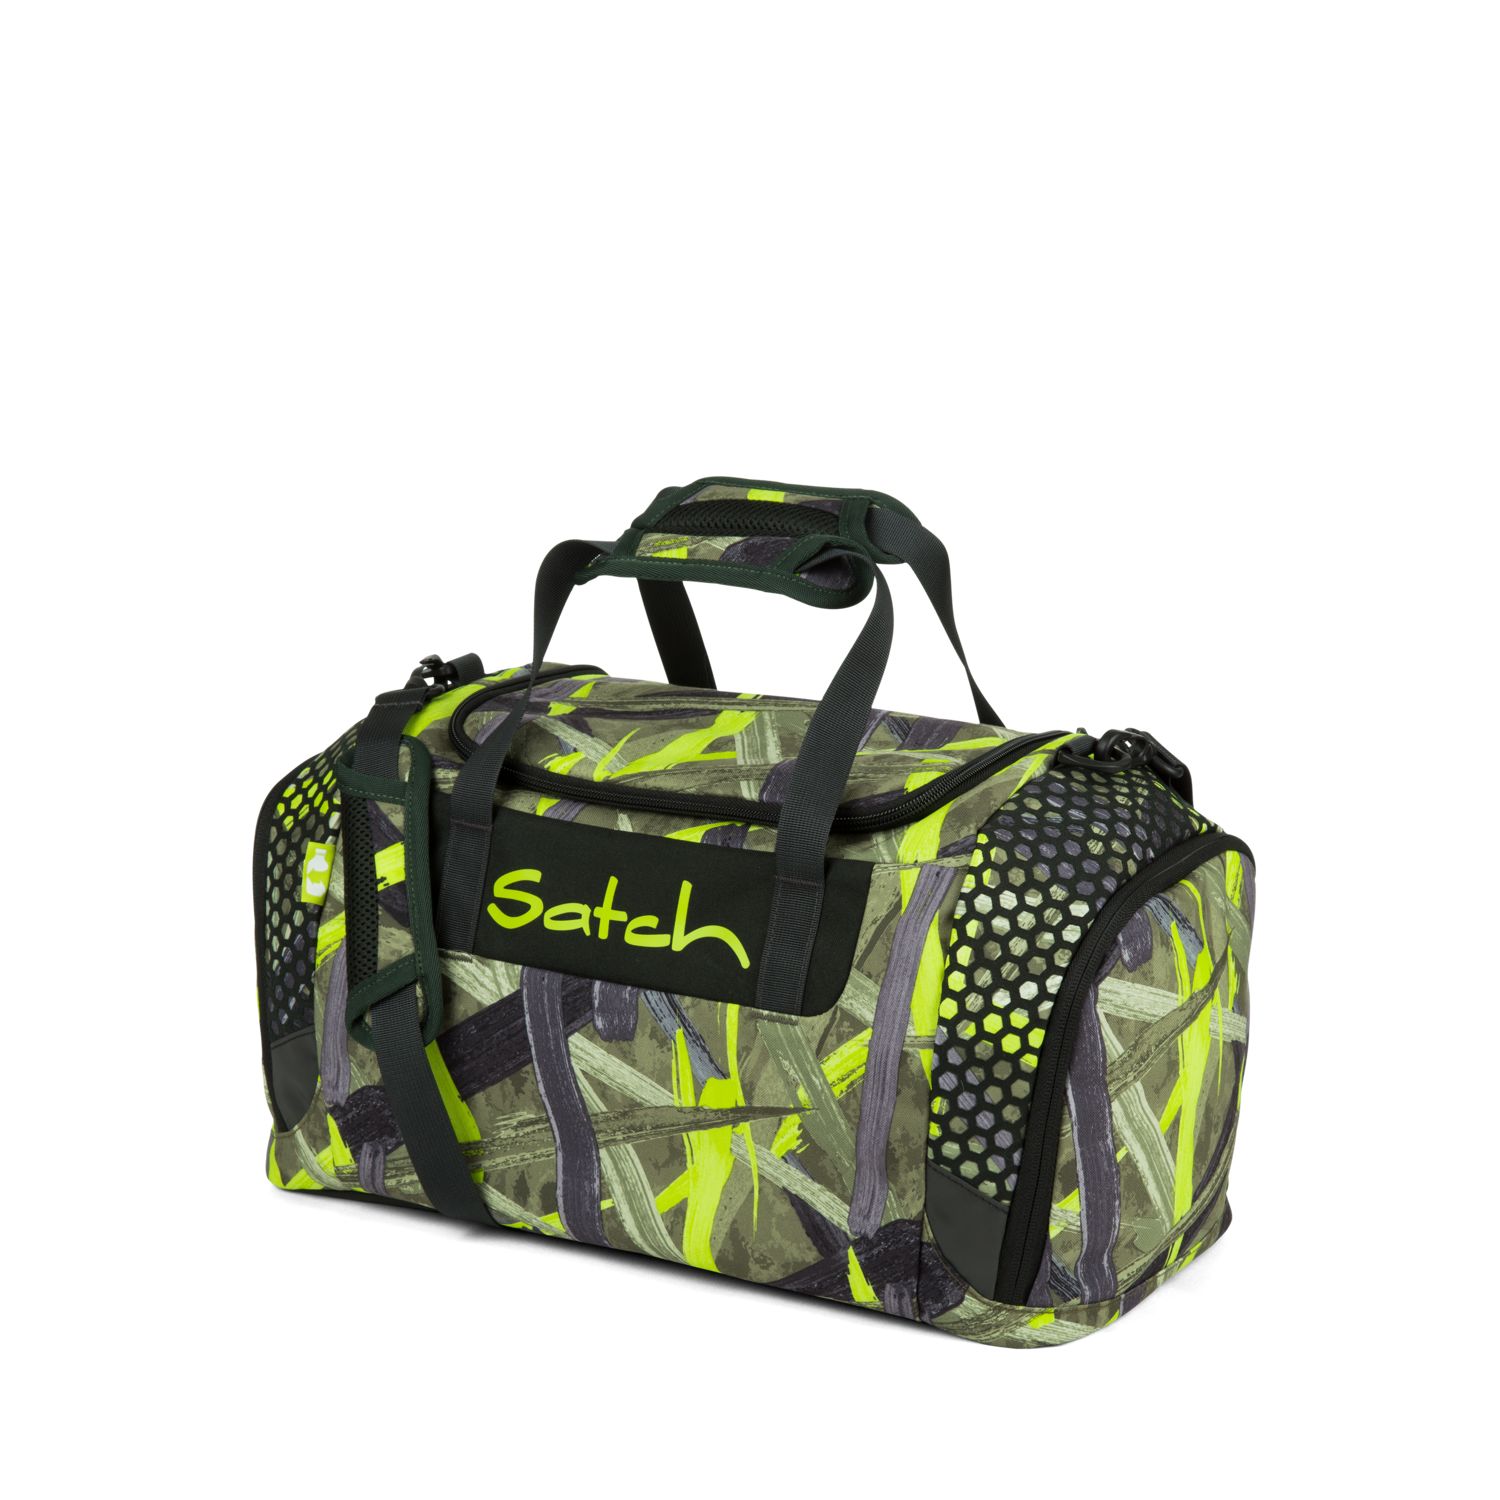 satch Sporttasche Jungle Lazer | jetzt online kaufen auf Koffer.de ✓